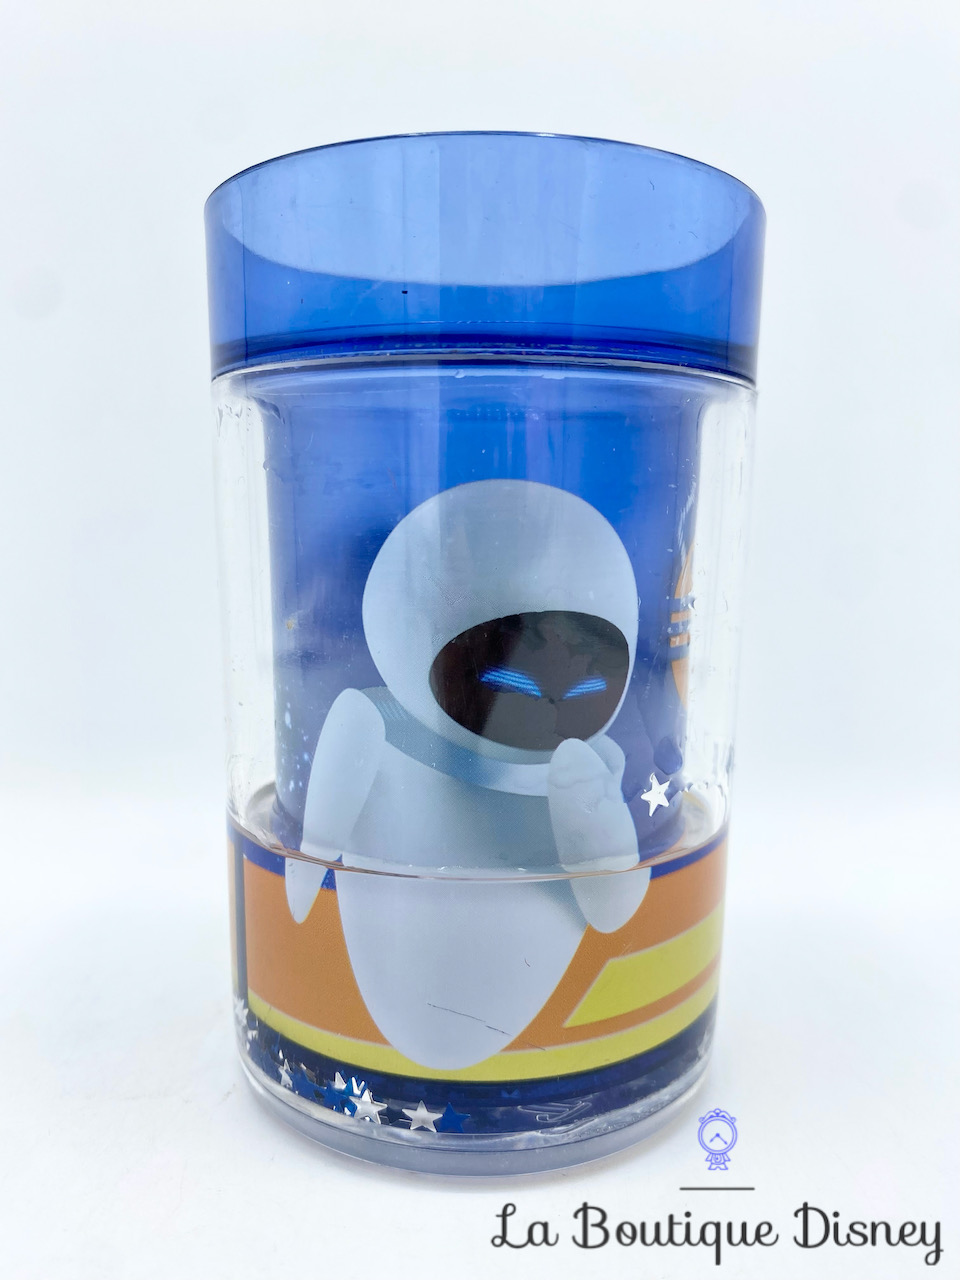 Gobelet Wall E Disney Pixar Trudeau verre plastique bleu robot